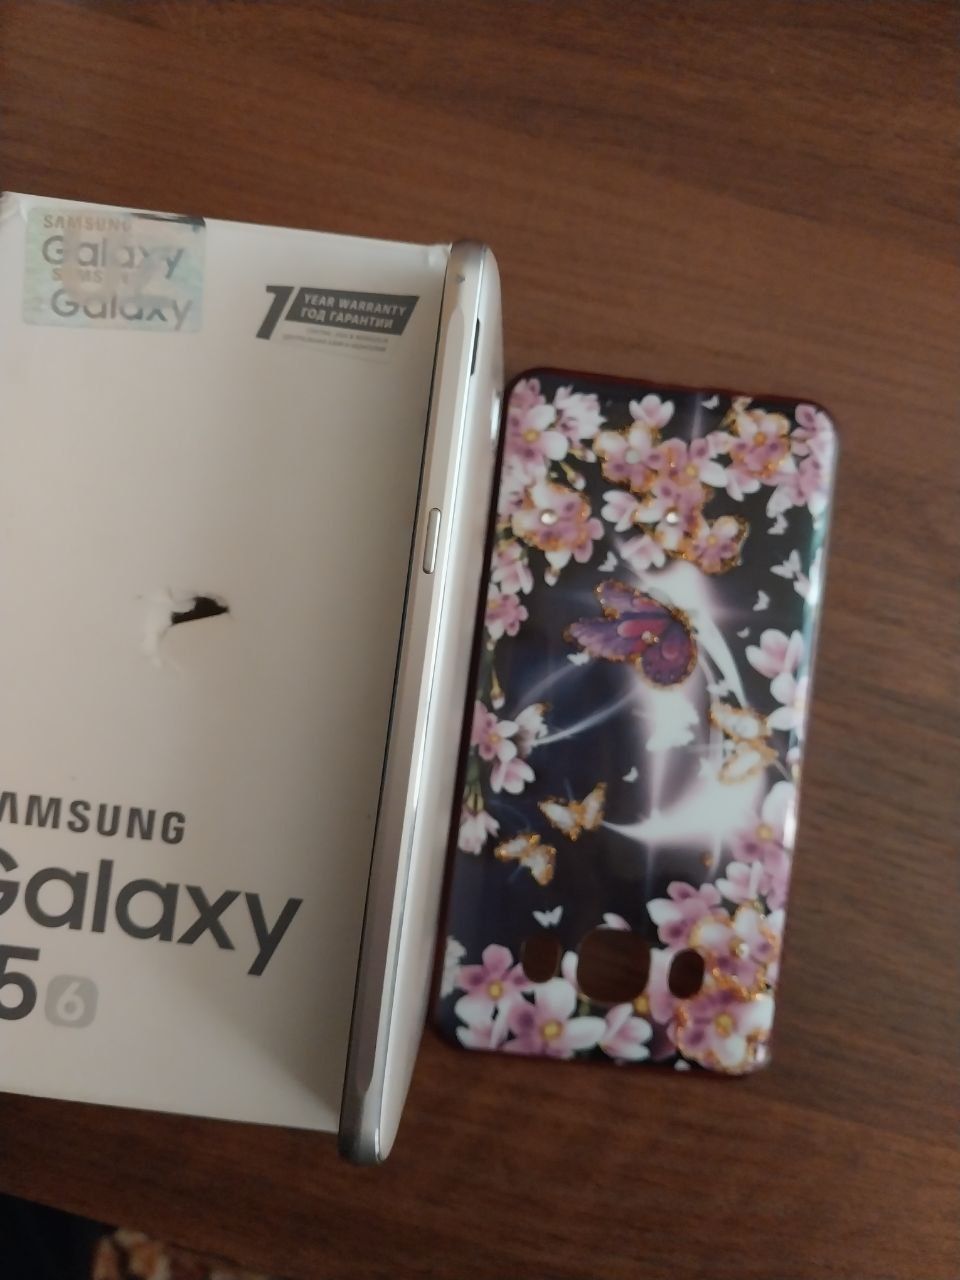 Samsung J 5 tilla rang xolati yaxshi